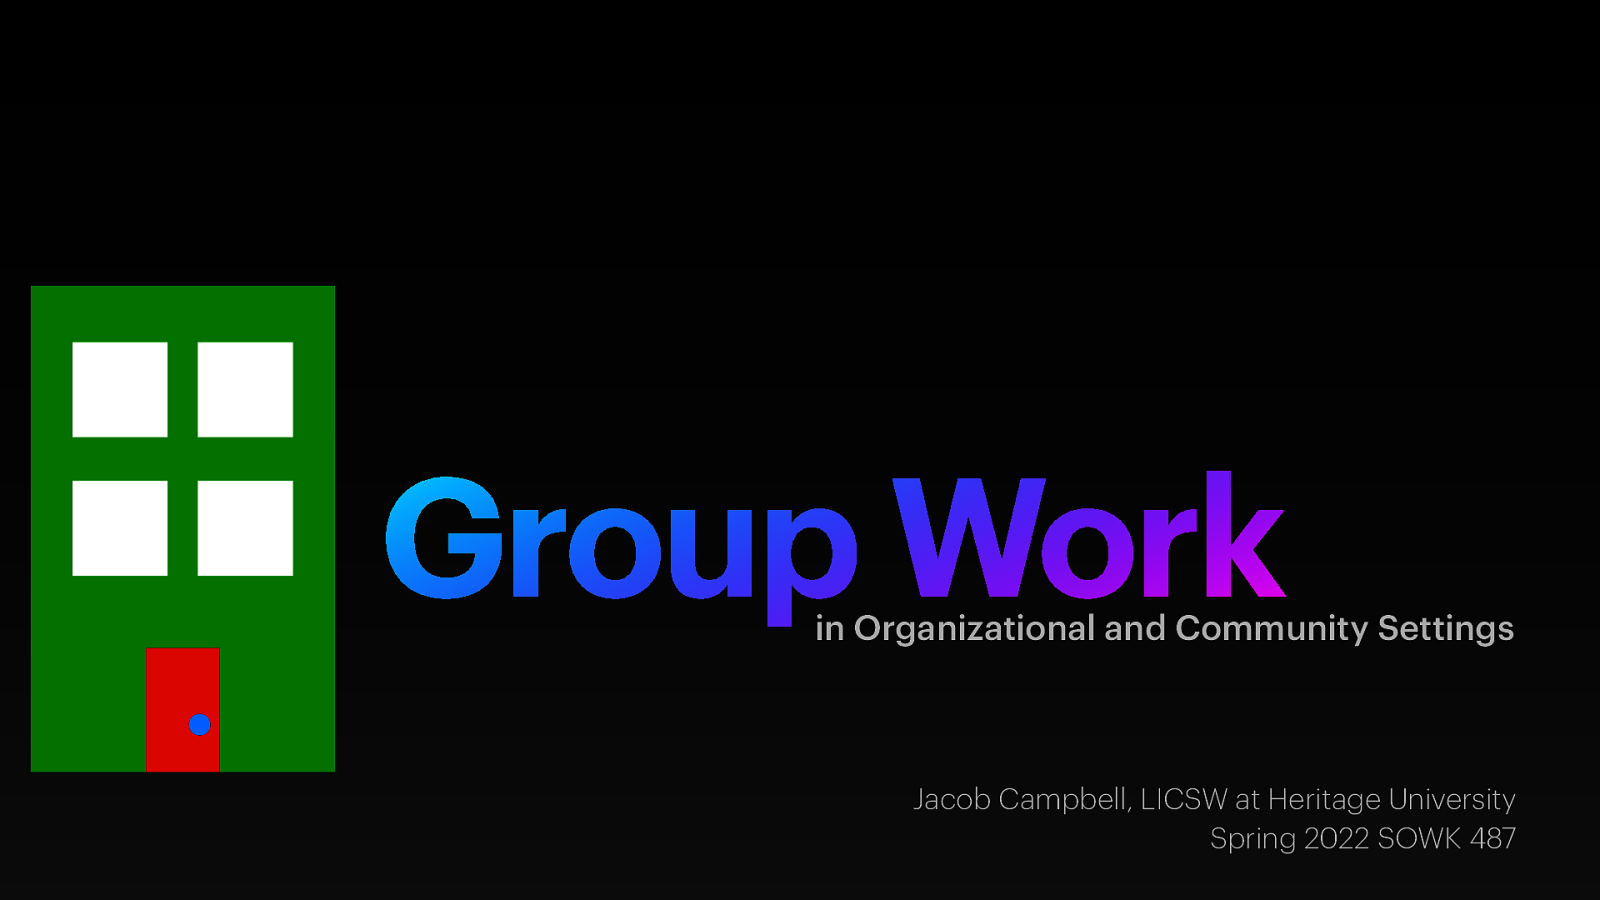 Spring 2022 SOWK 487 Week 15 - Group Work in Organizational and Community Settings